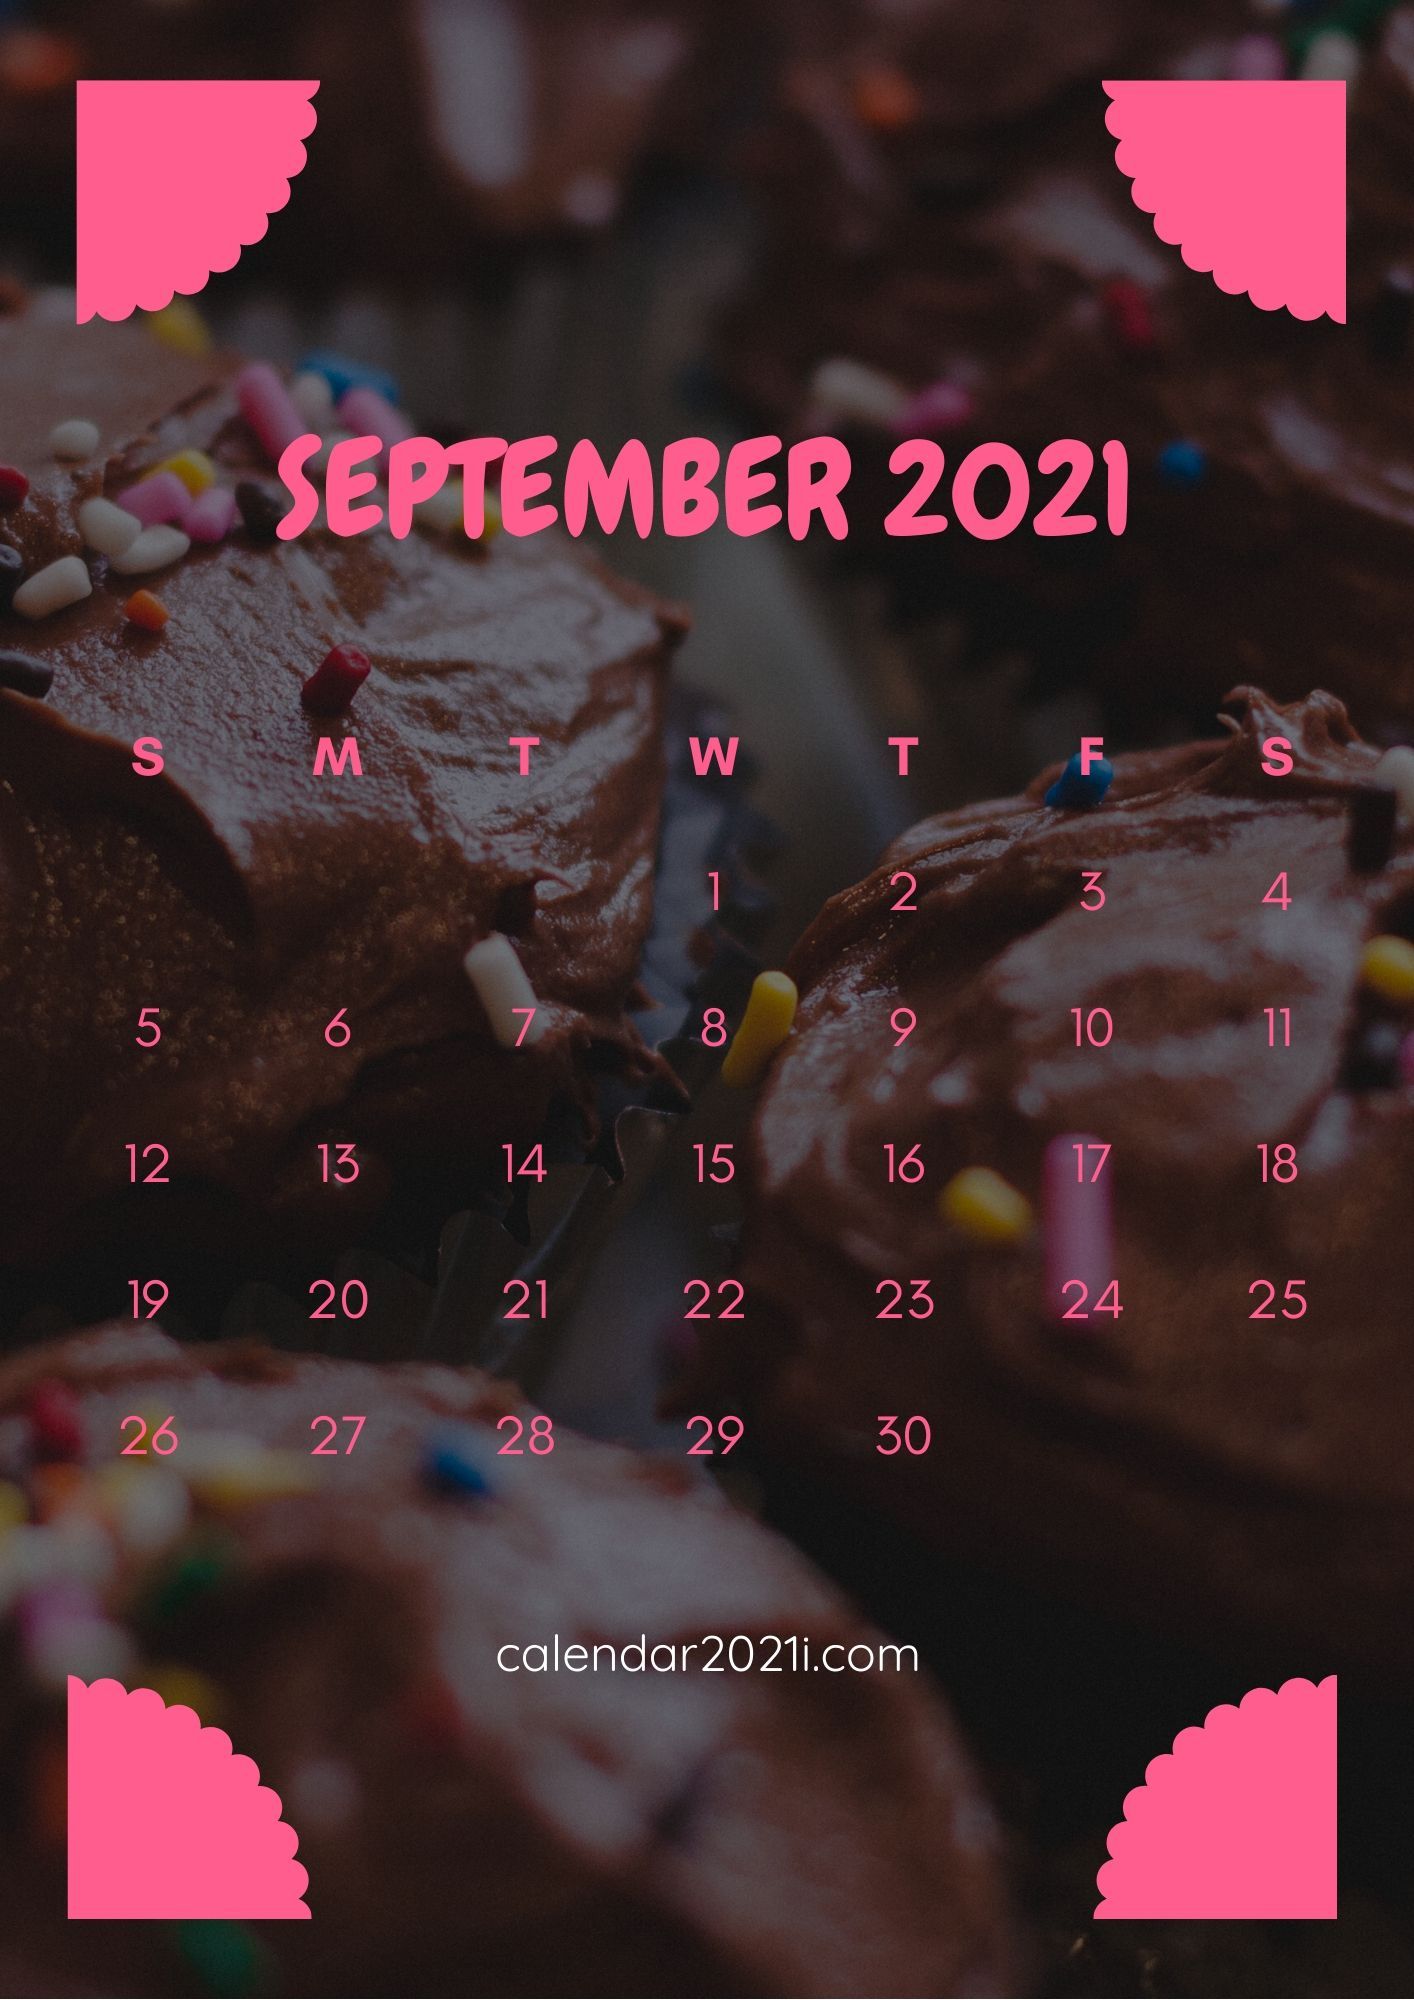 September Calendar 2021 iPhone HD Wallpaper with beautiful colors. Calendar wallpaper, 2021 calendar, Free printable calendar